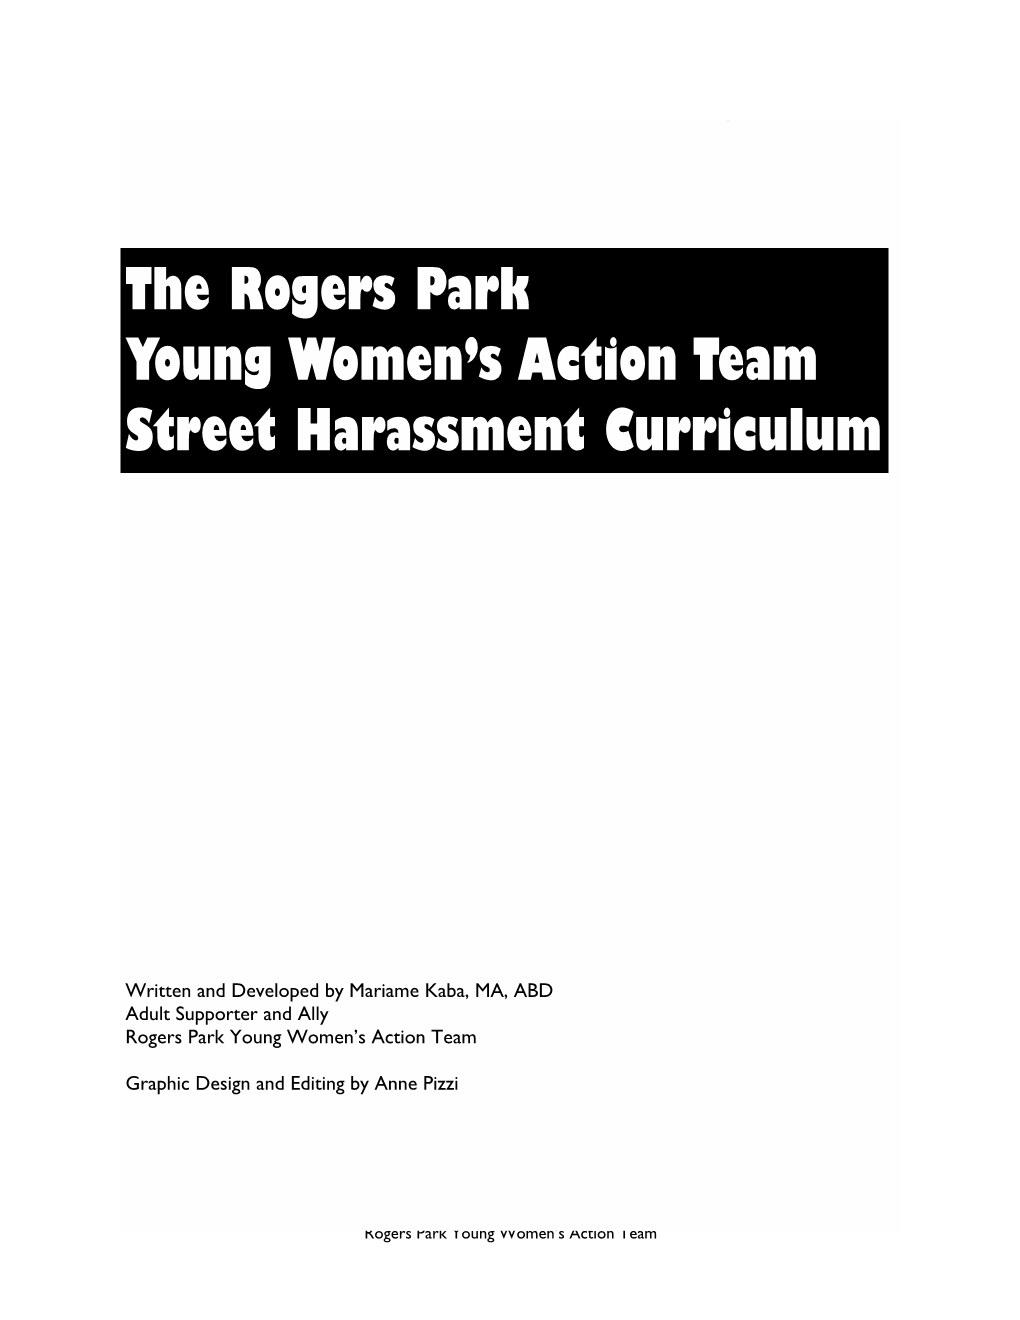 Street Harassment Curriculum